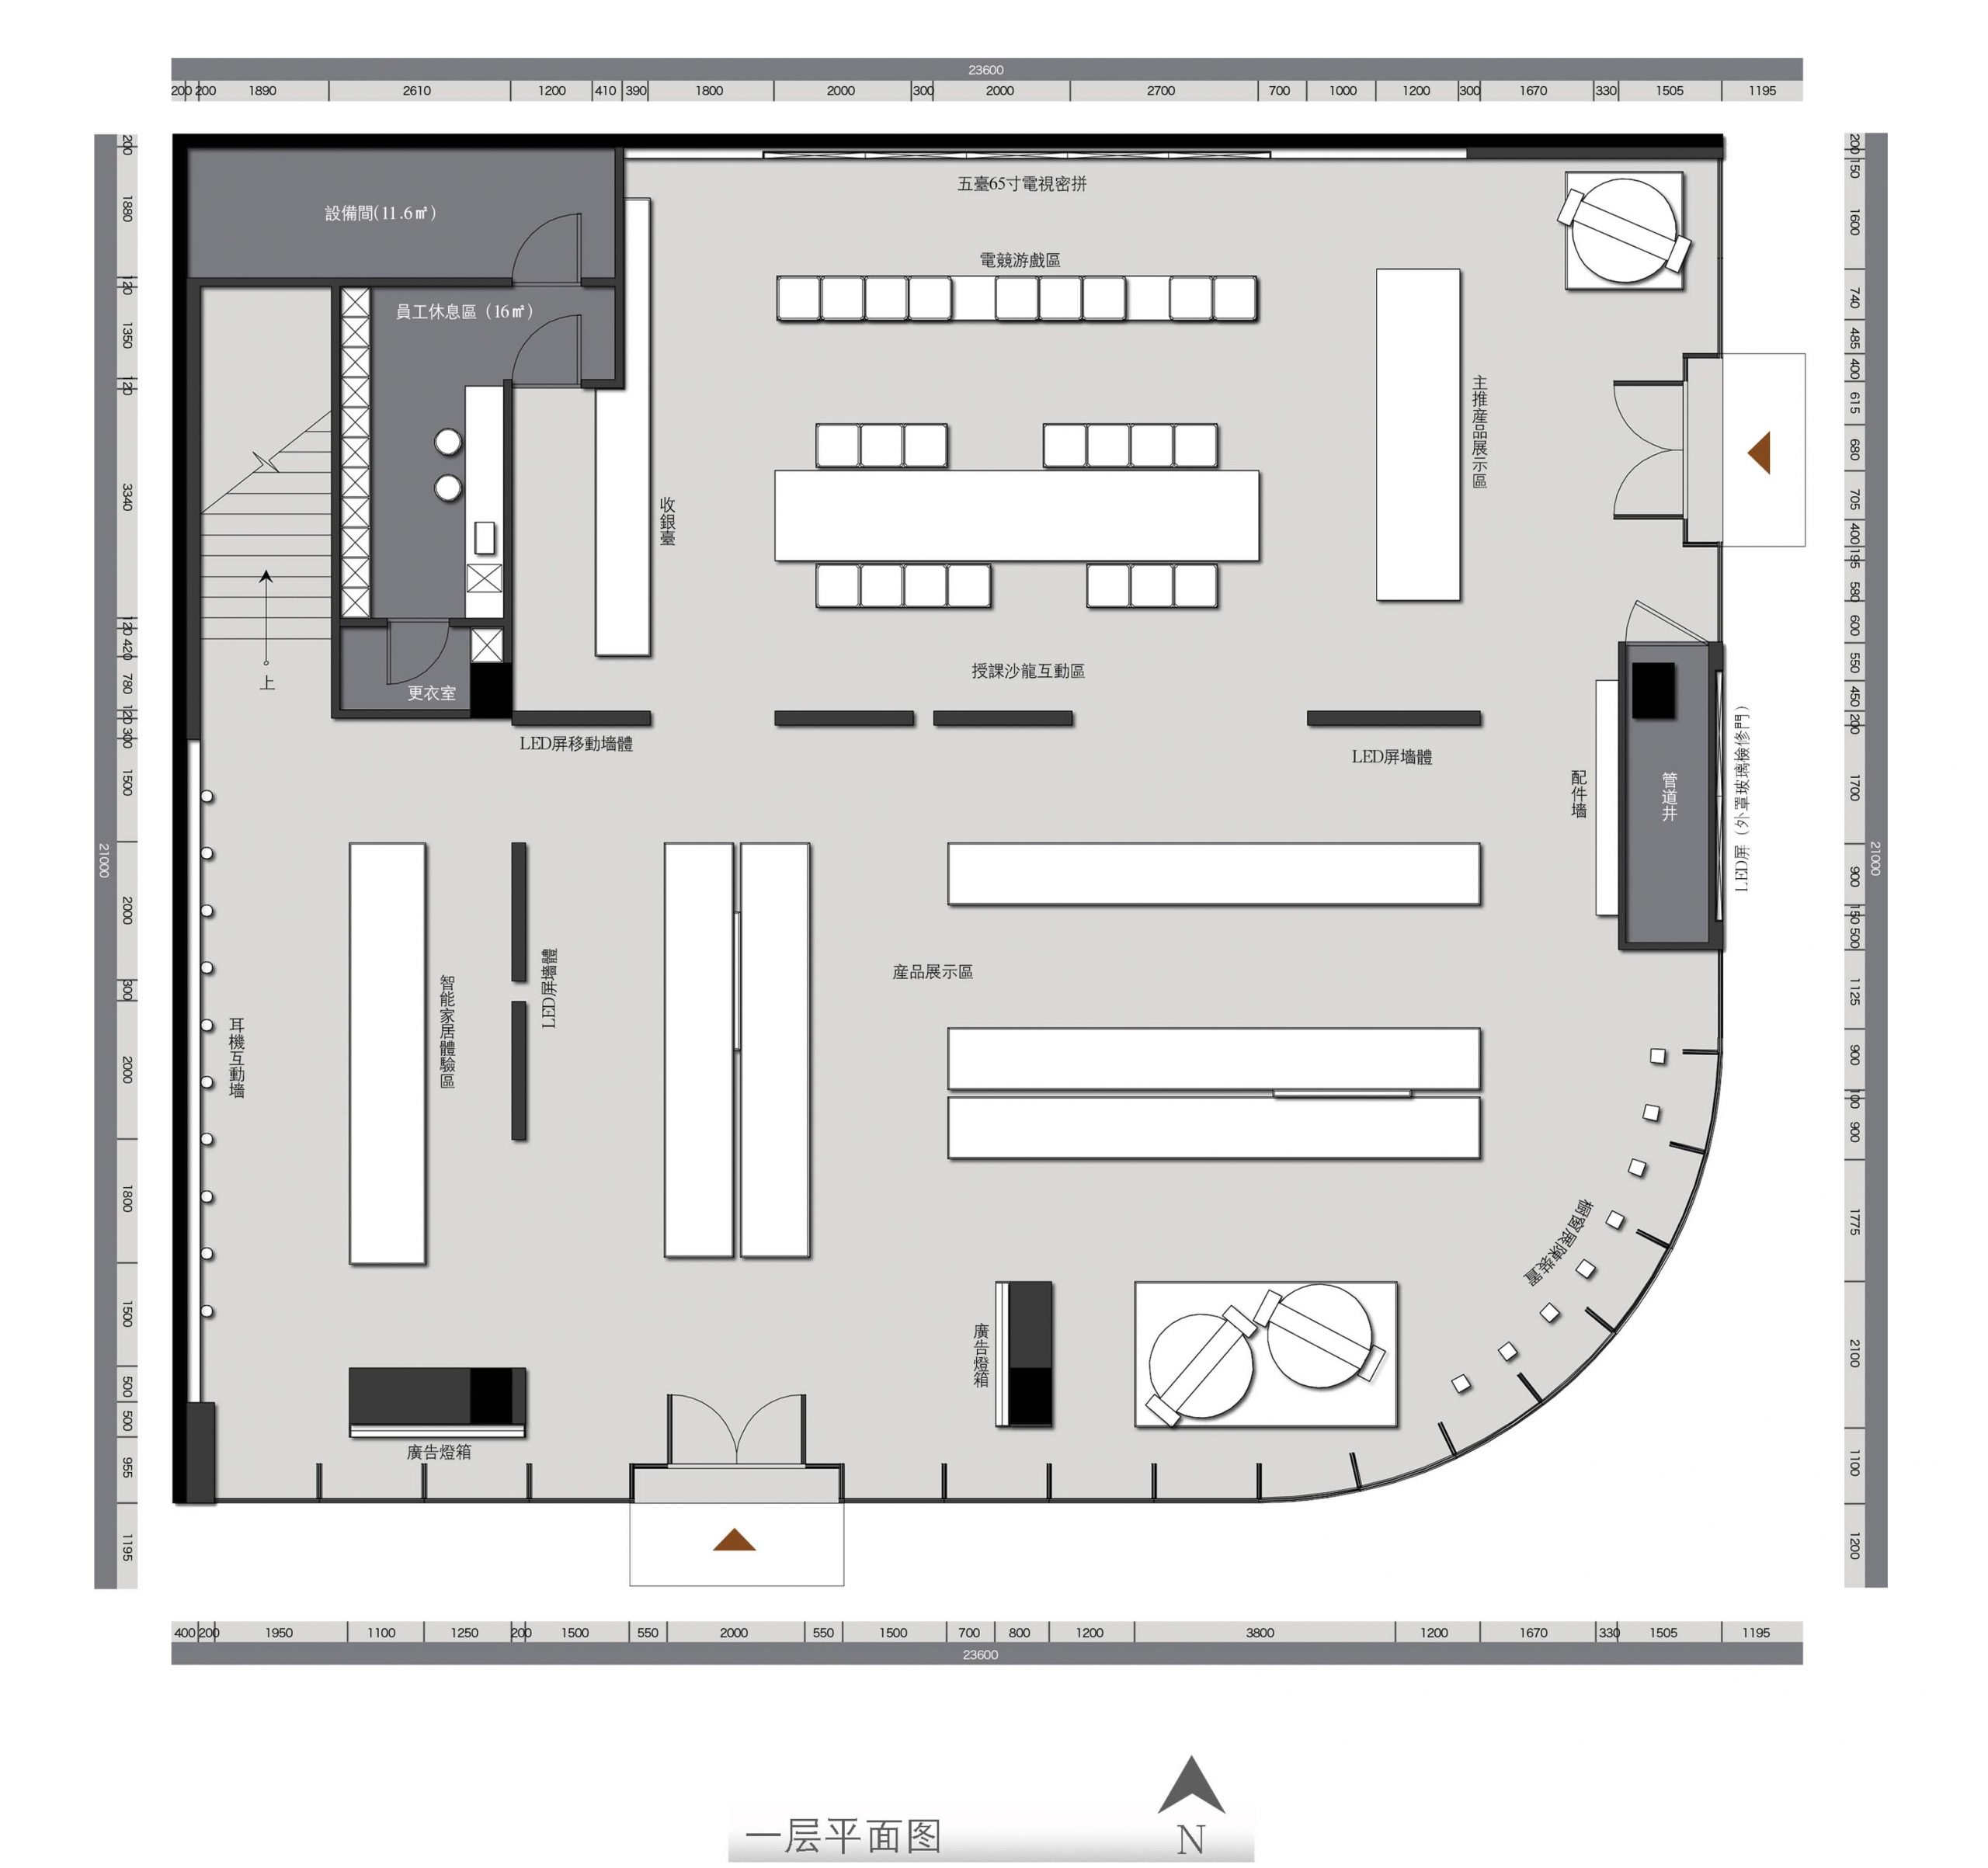 专卖店设计,domani东仓建设 北京·oppo超级旗舰店设计 一层平面图